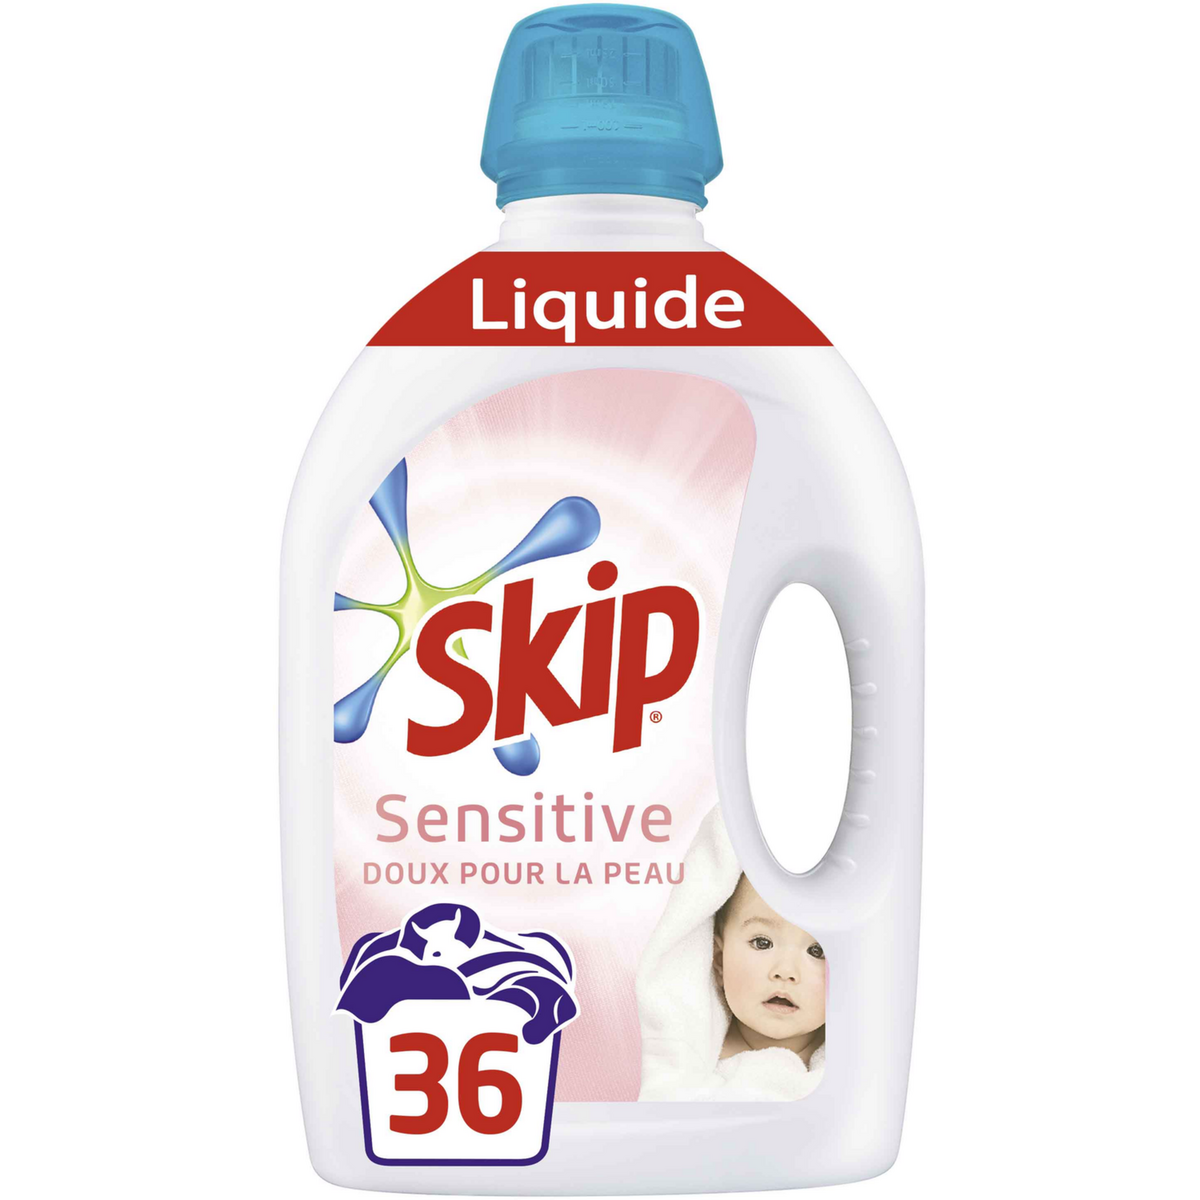 SKIP Skip Lessive liquide sensitive 36 lavages 1,8l 36 lavages 1,8l